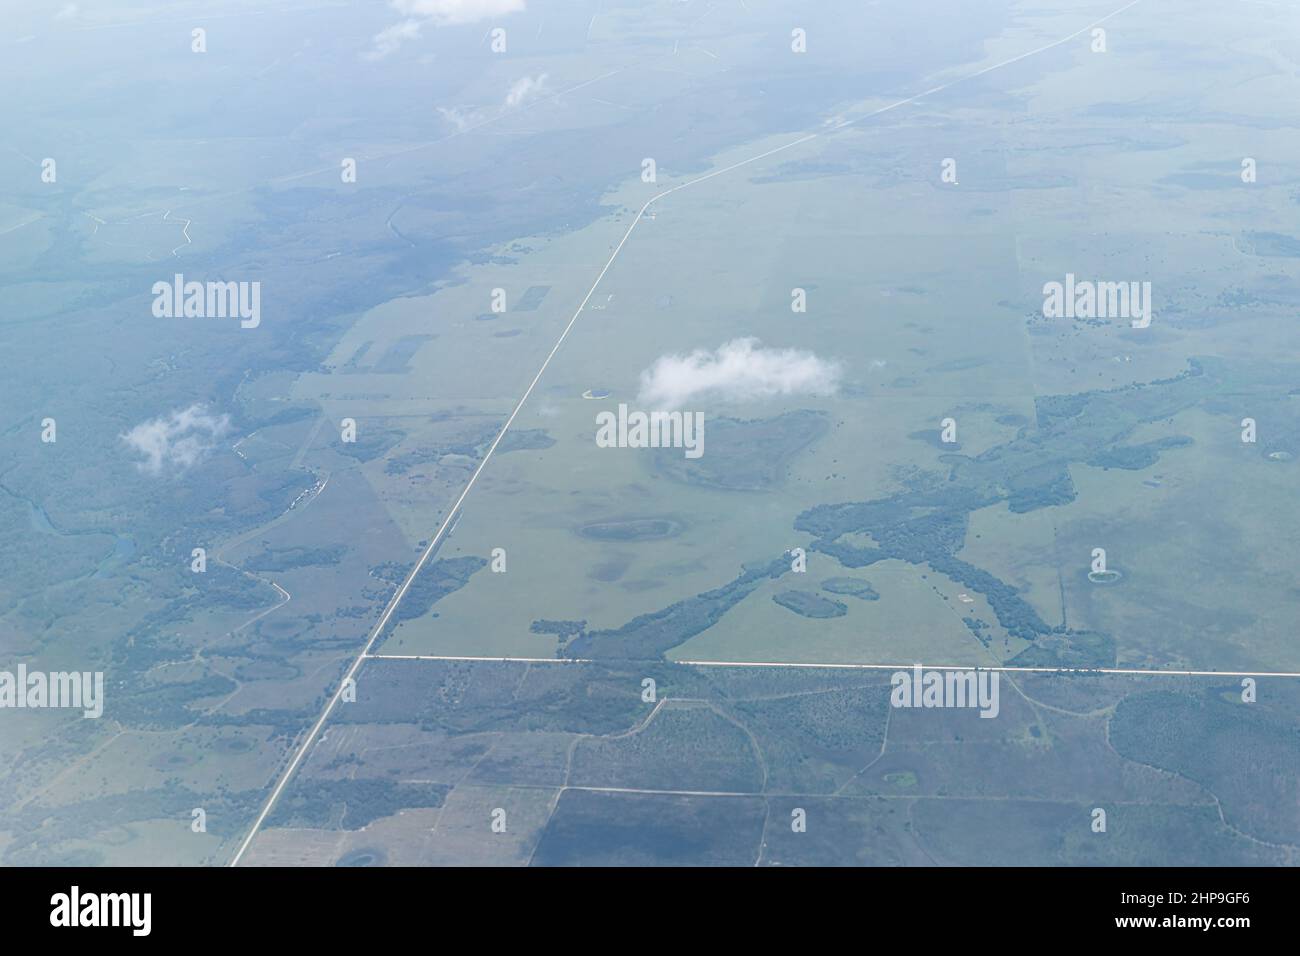 Hochwinkel-Luftaufnahme des Südwestfloridas in der Nähe von Fort Myers Landschaft mit Feldern und Wolken Sahara Staubwolke Luftschicht verursacht Dunst Stockfoto